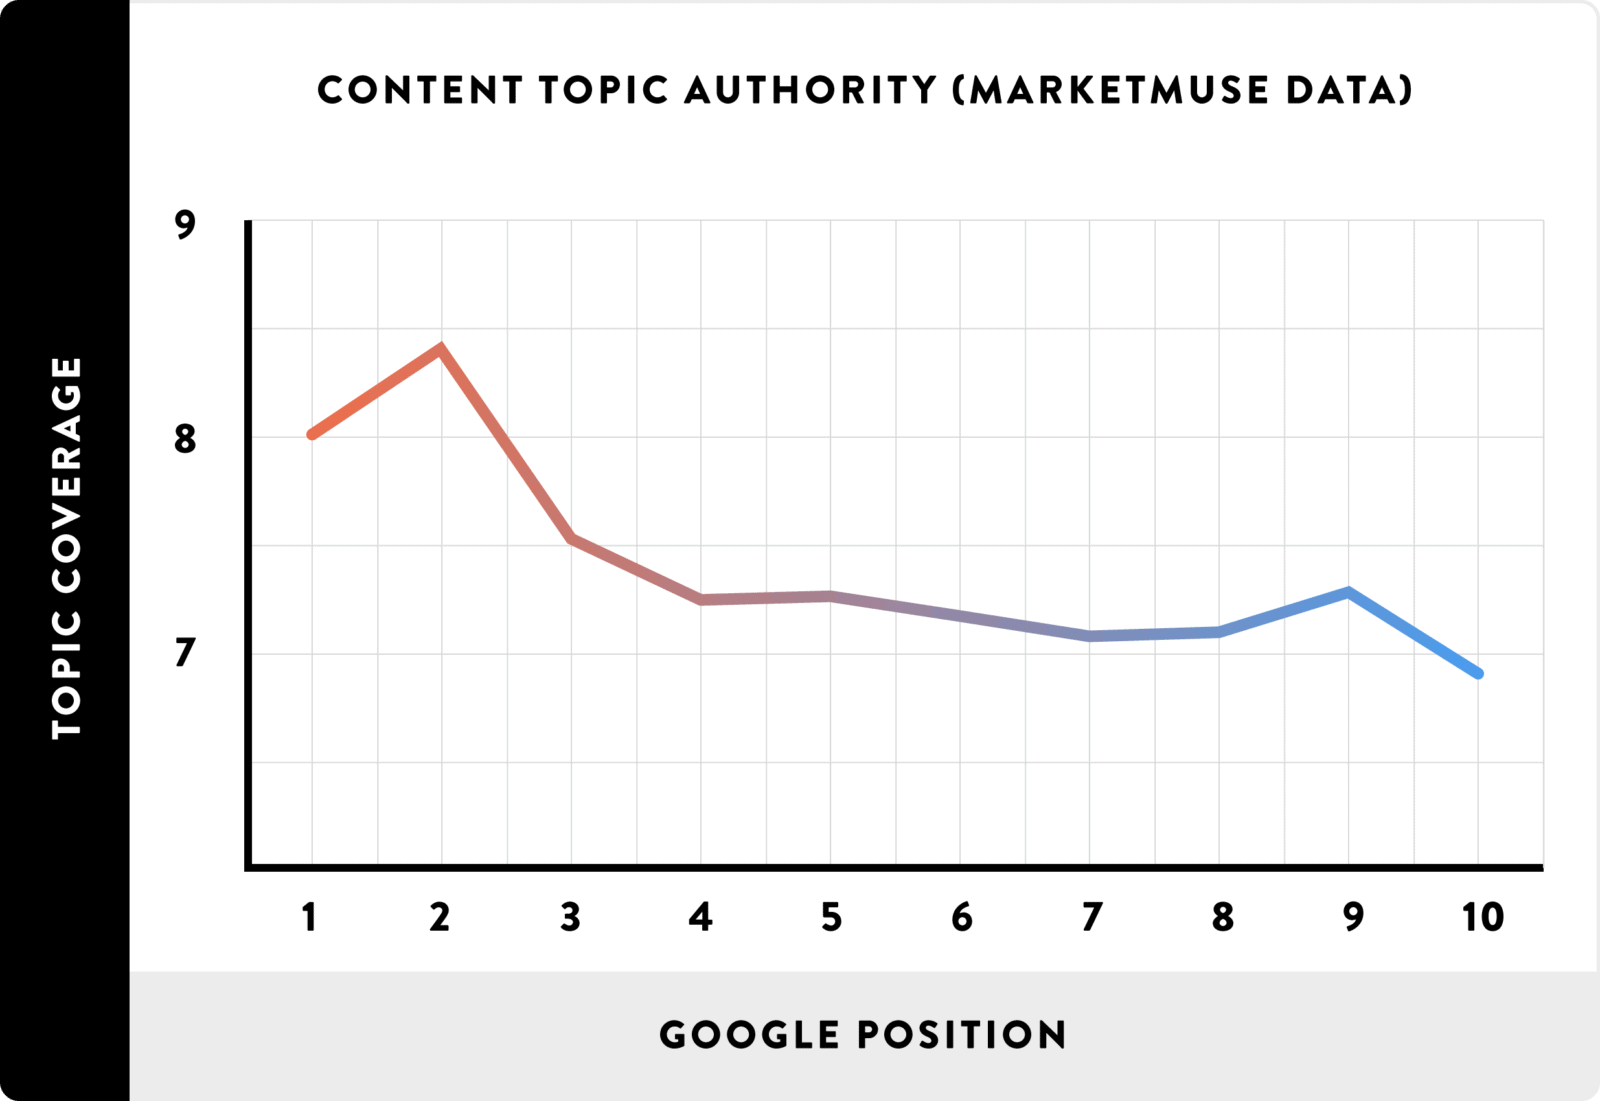 Content Authority